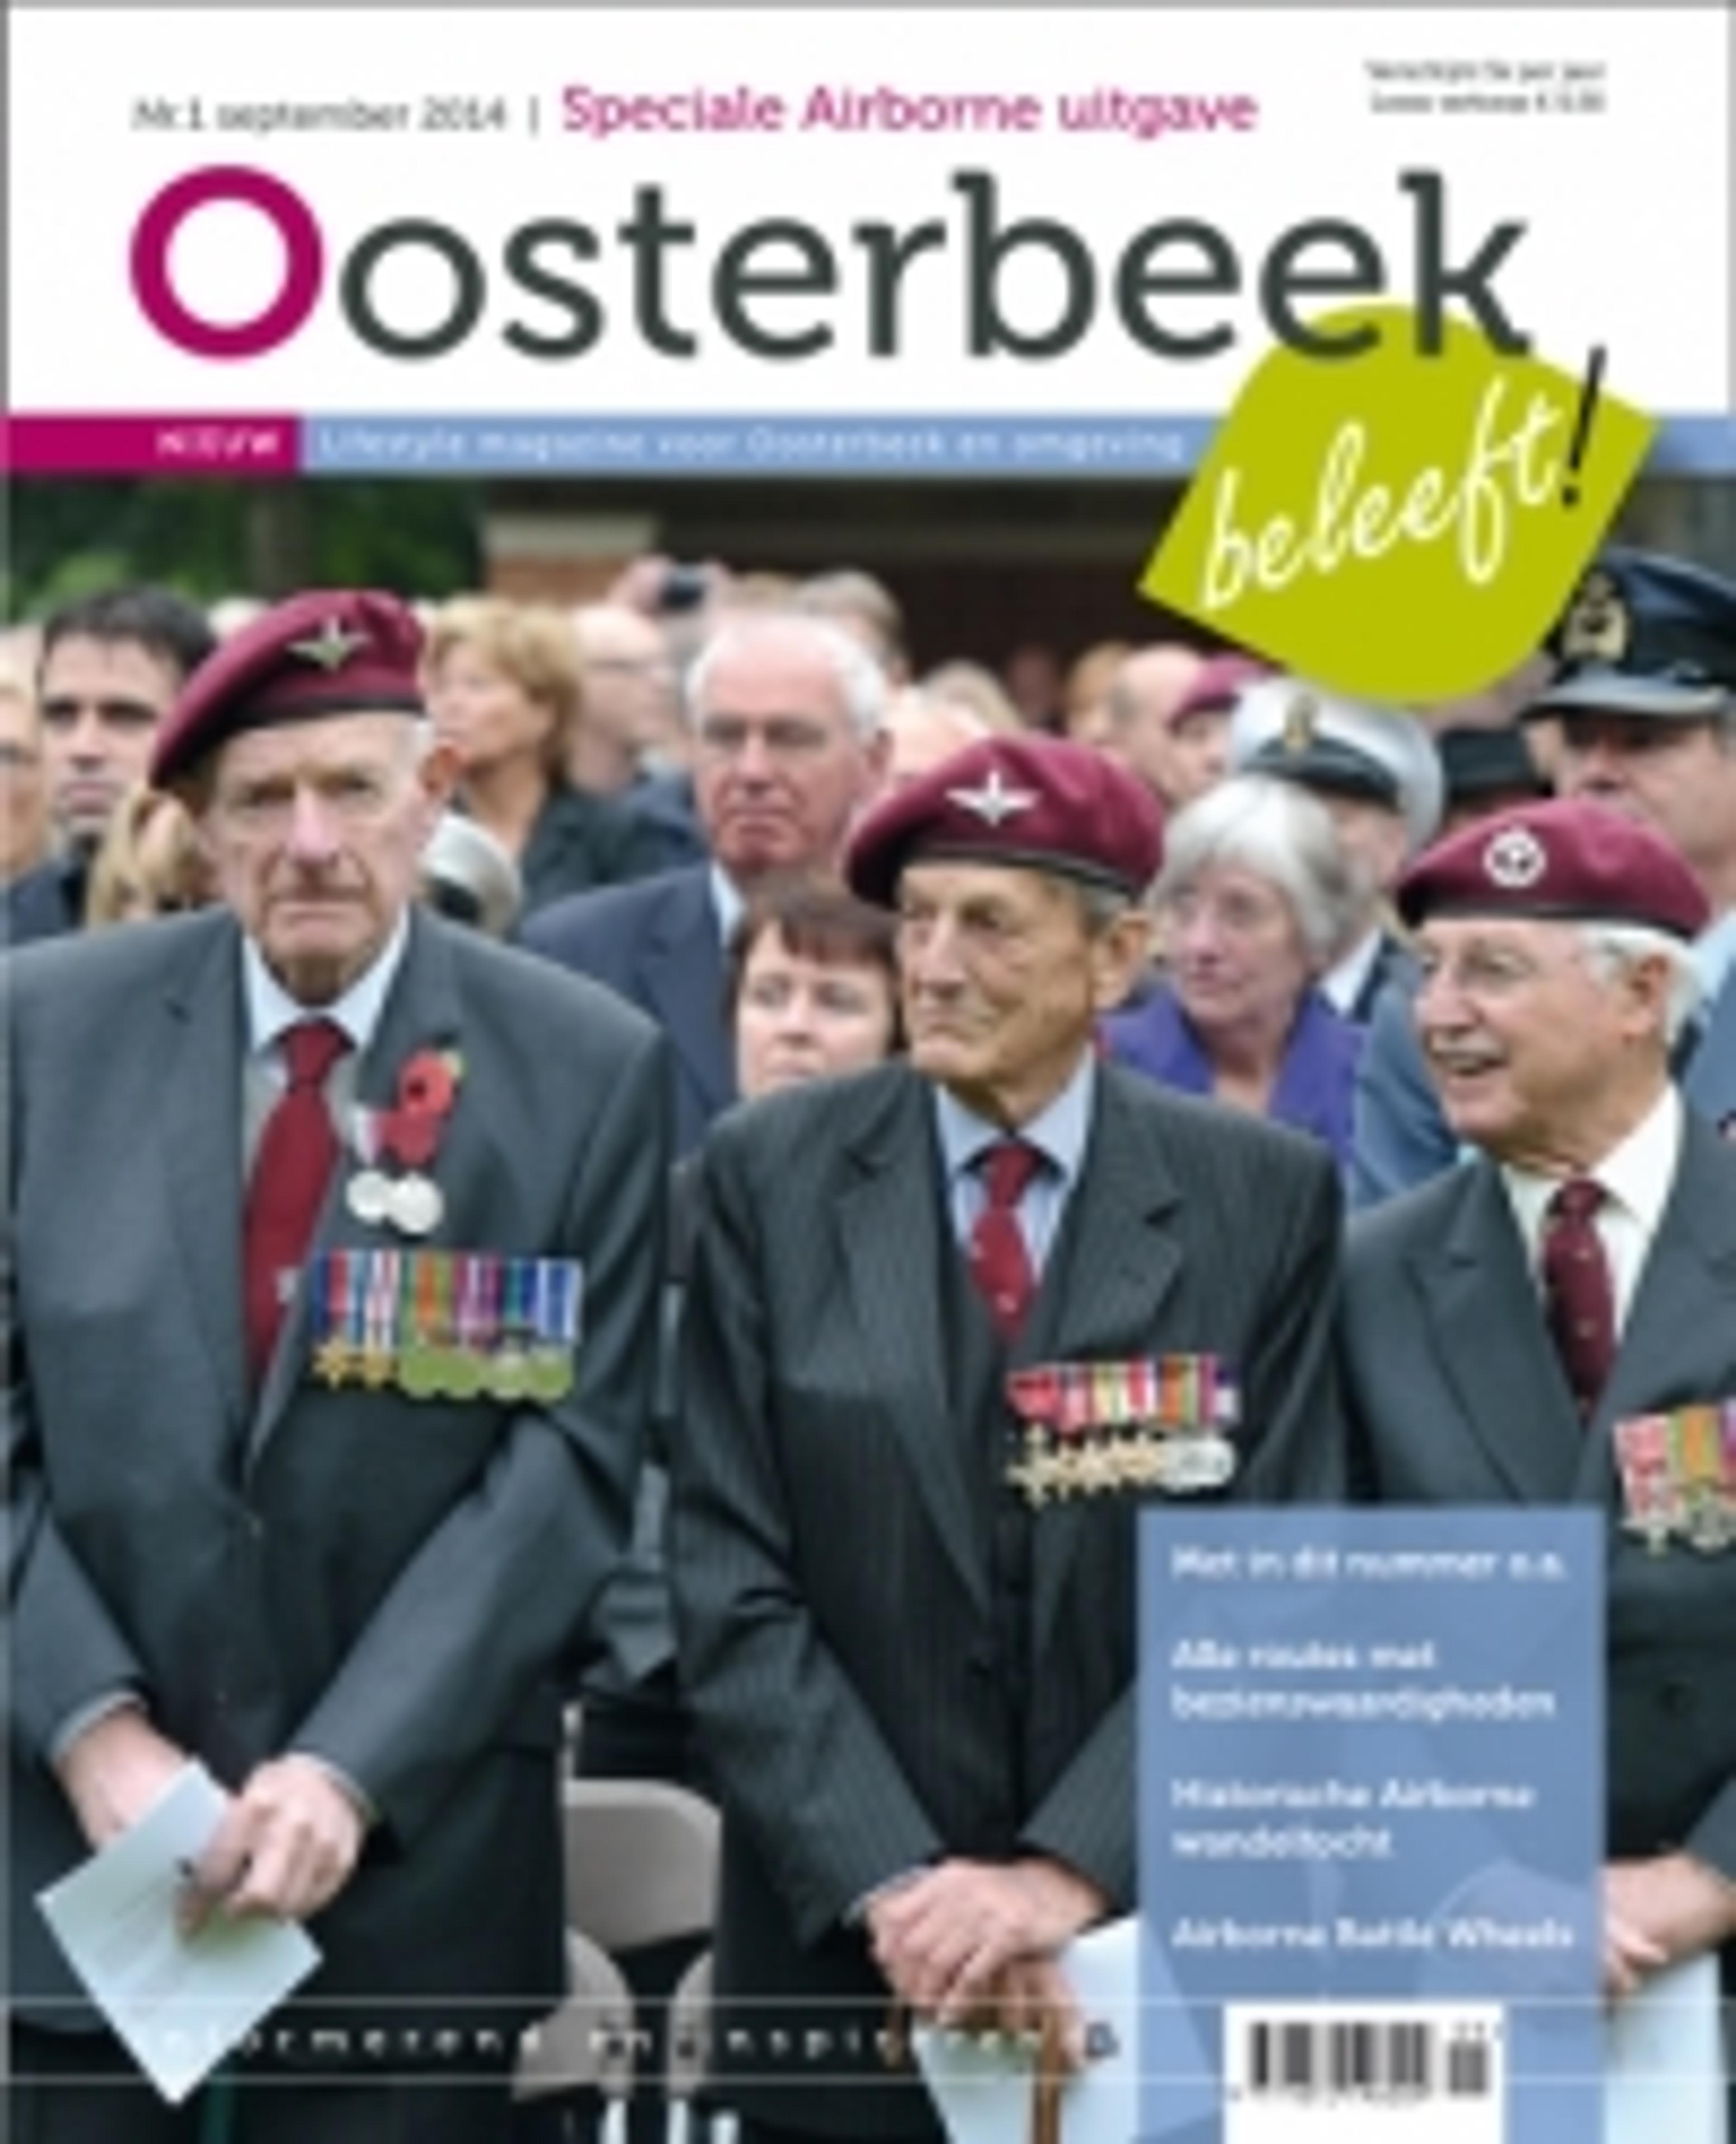 Oosterbeek Beleeft! lifestylemagazine voor Oosterbeek